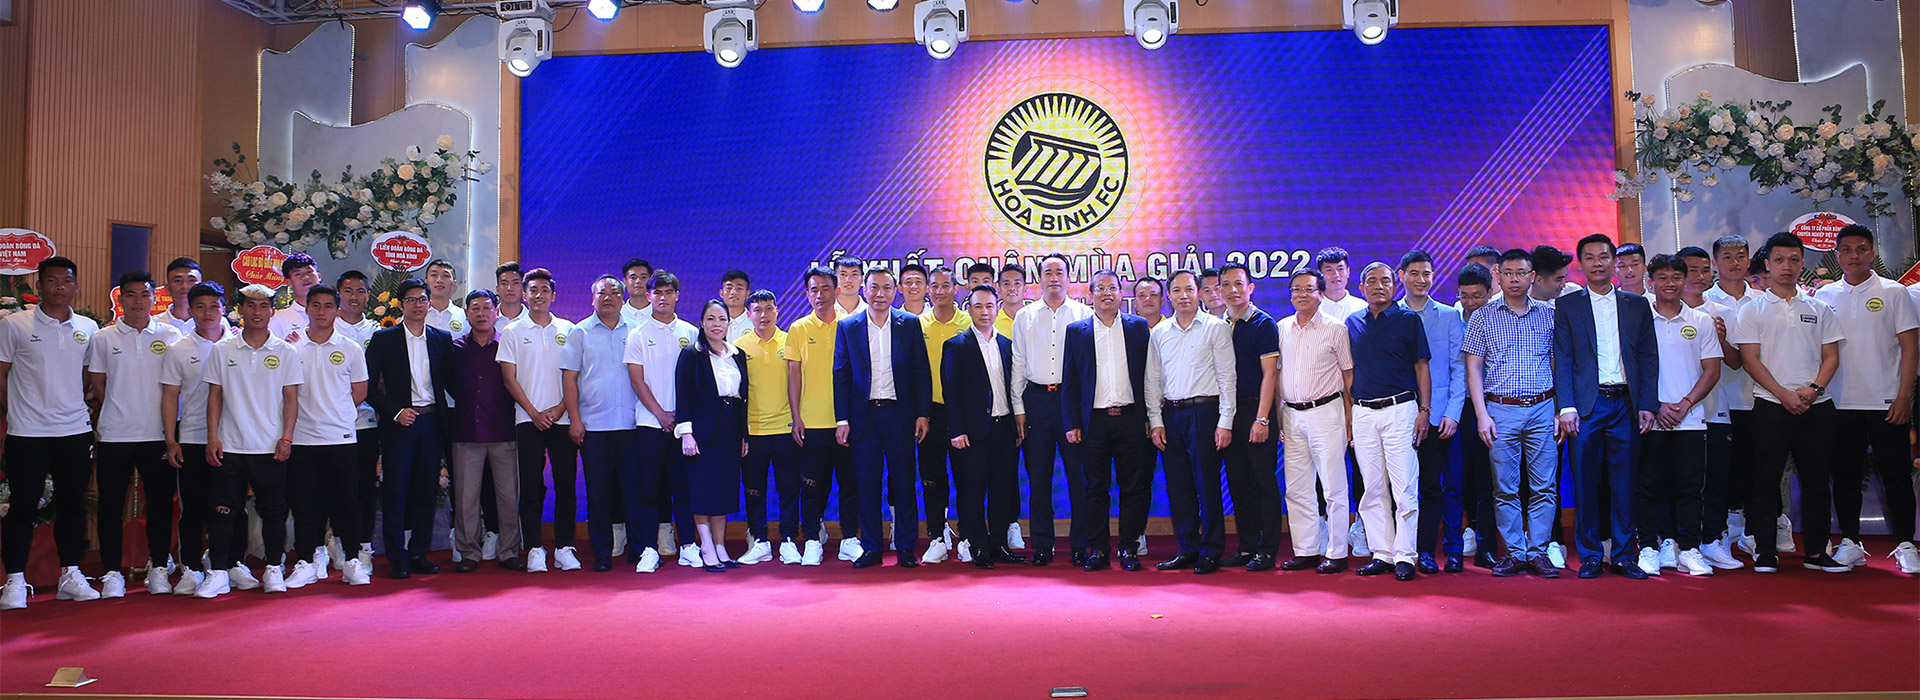 Hòa Bình FC 2022 - Full